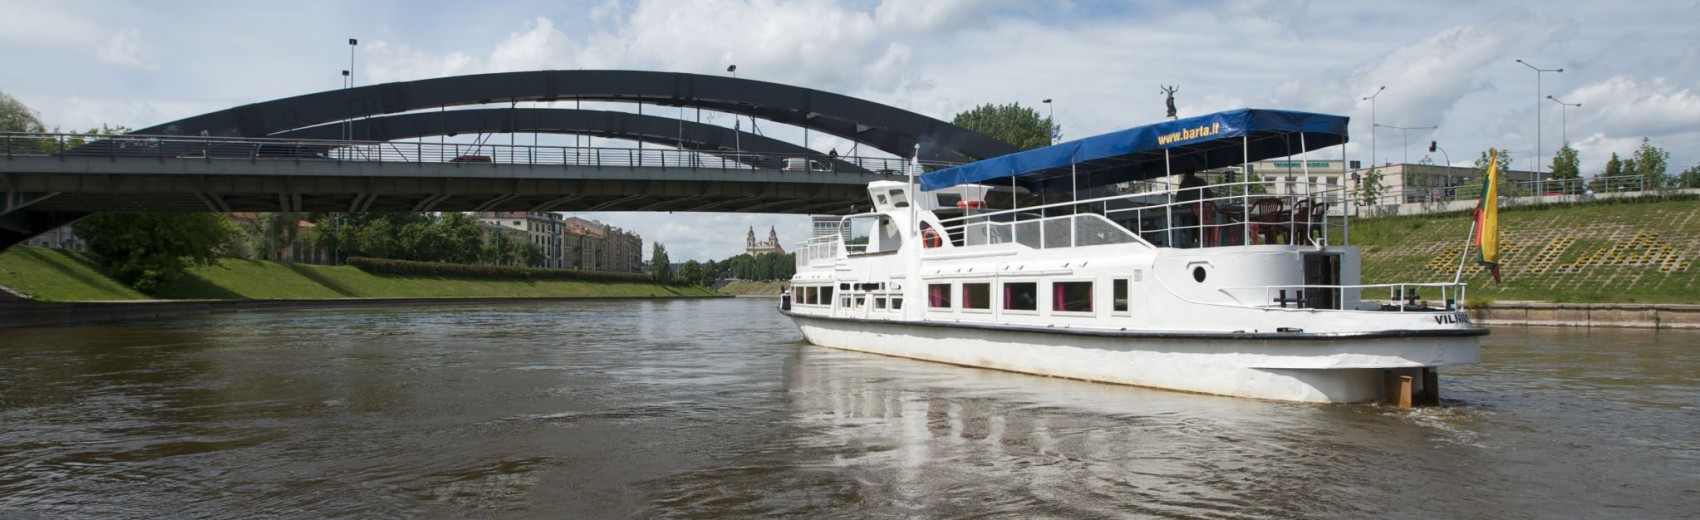 vilnius boat tour